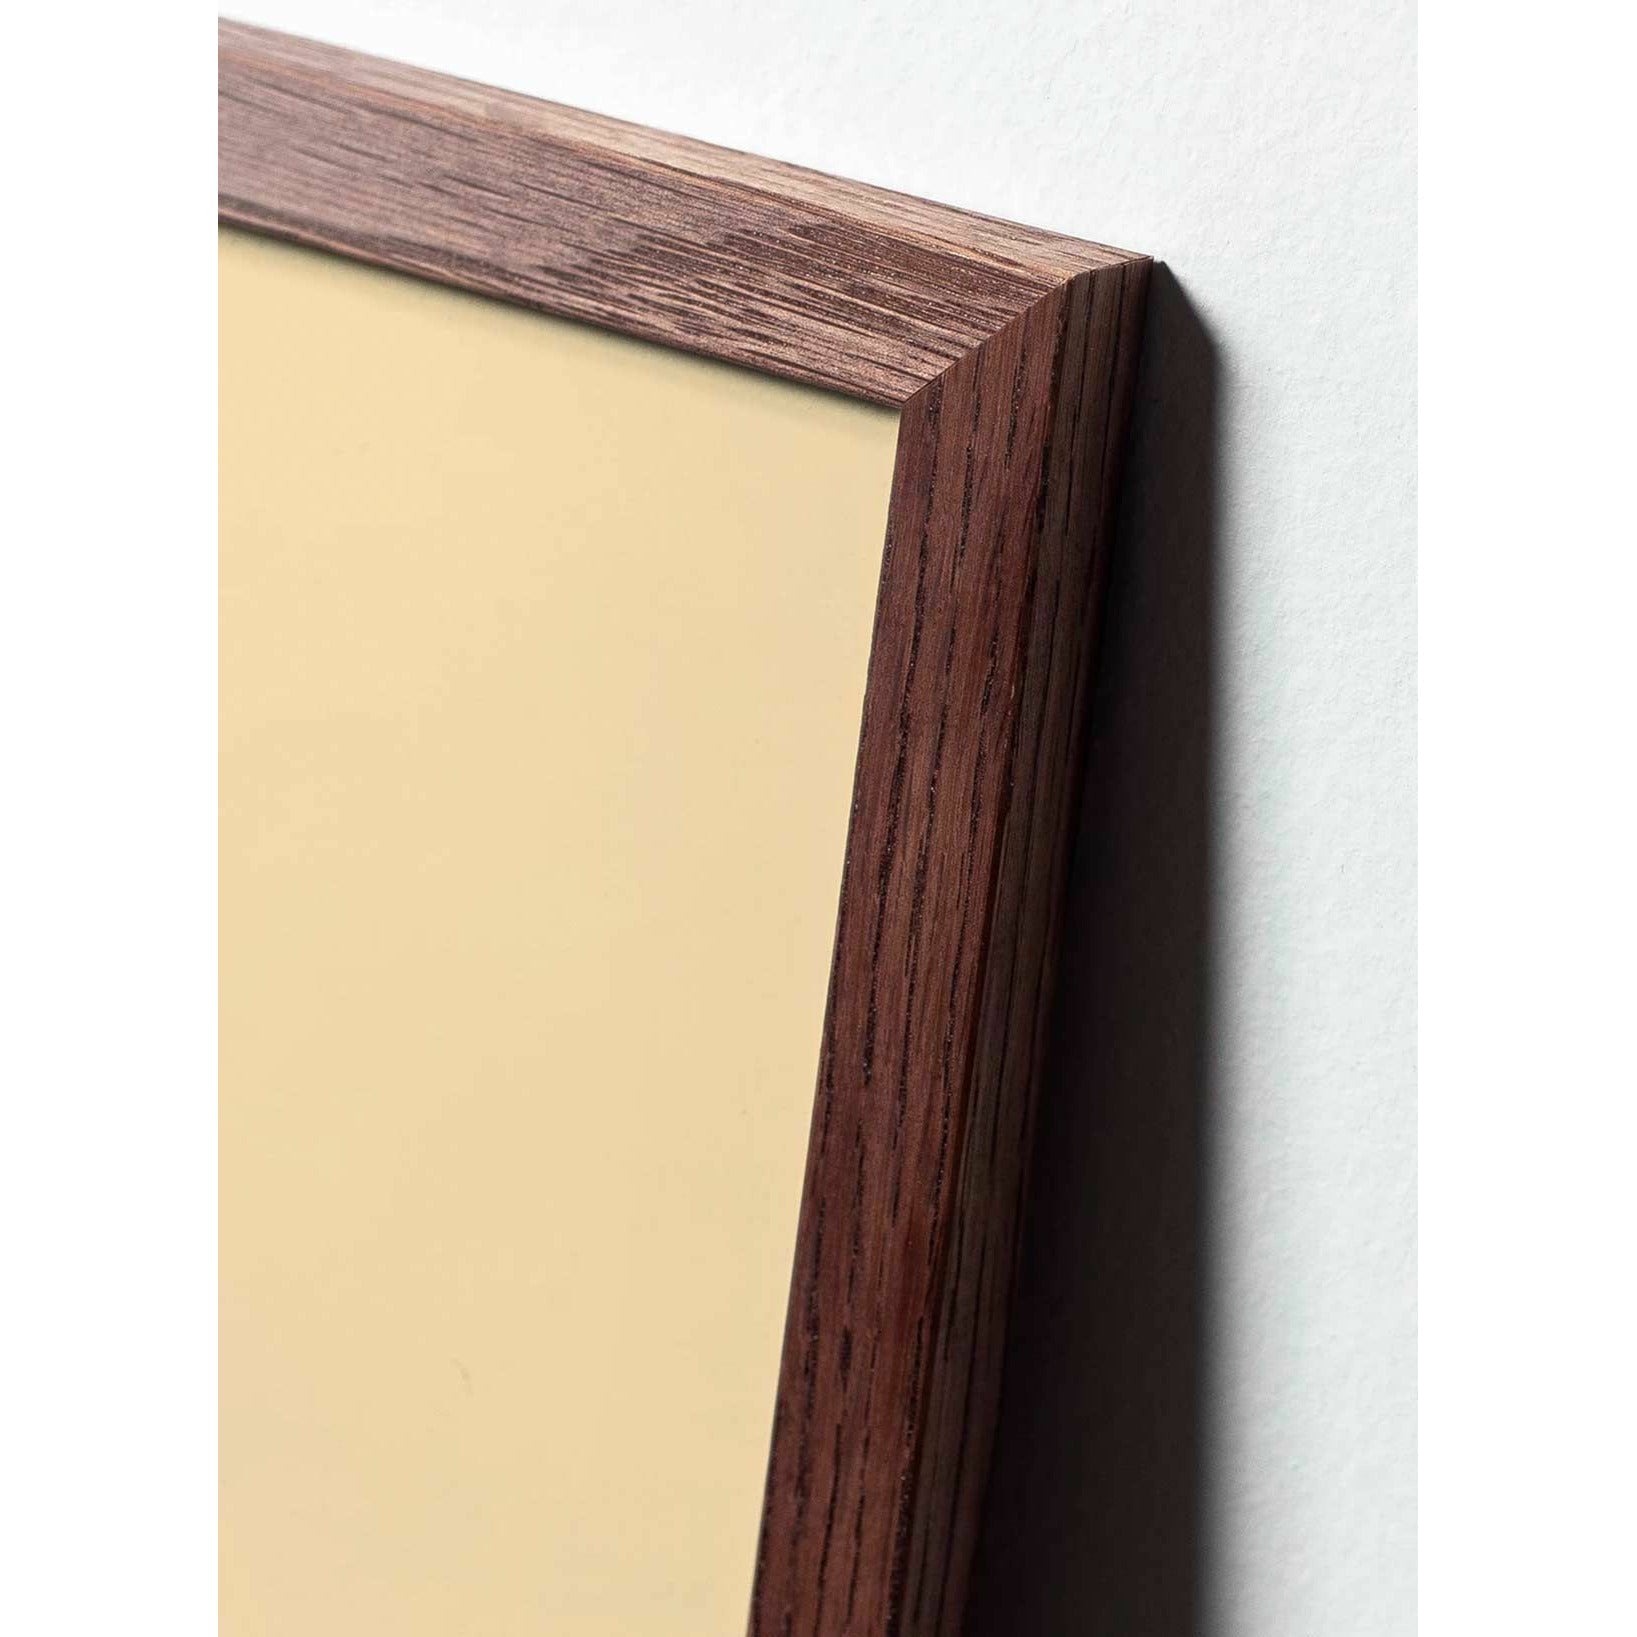 Póster clásico de pino de pino de creación, marco de madera oscura 70 x100 cm, fondo rojo